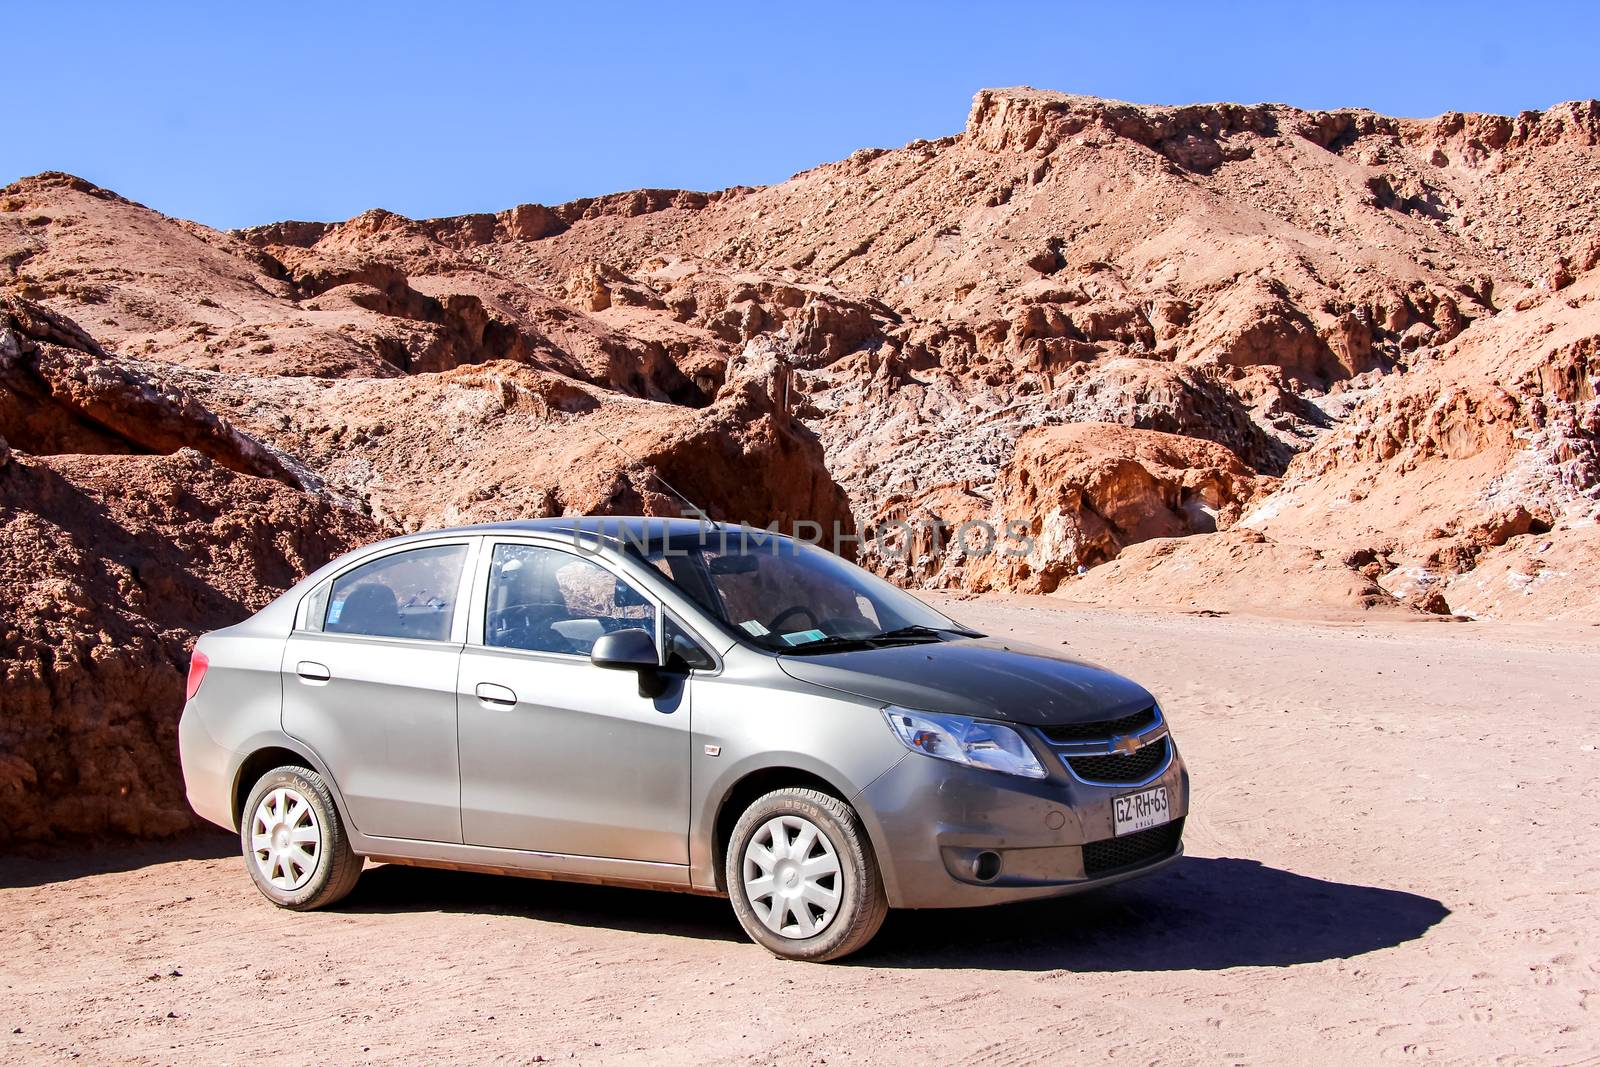 SAN PEDRO DE ATACAMA, CHILE - NOVEMBER 17, 2015: Motor car Chevrolet Sail in the Atacama desert.